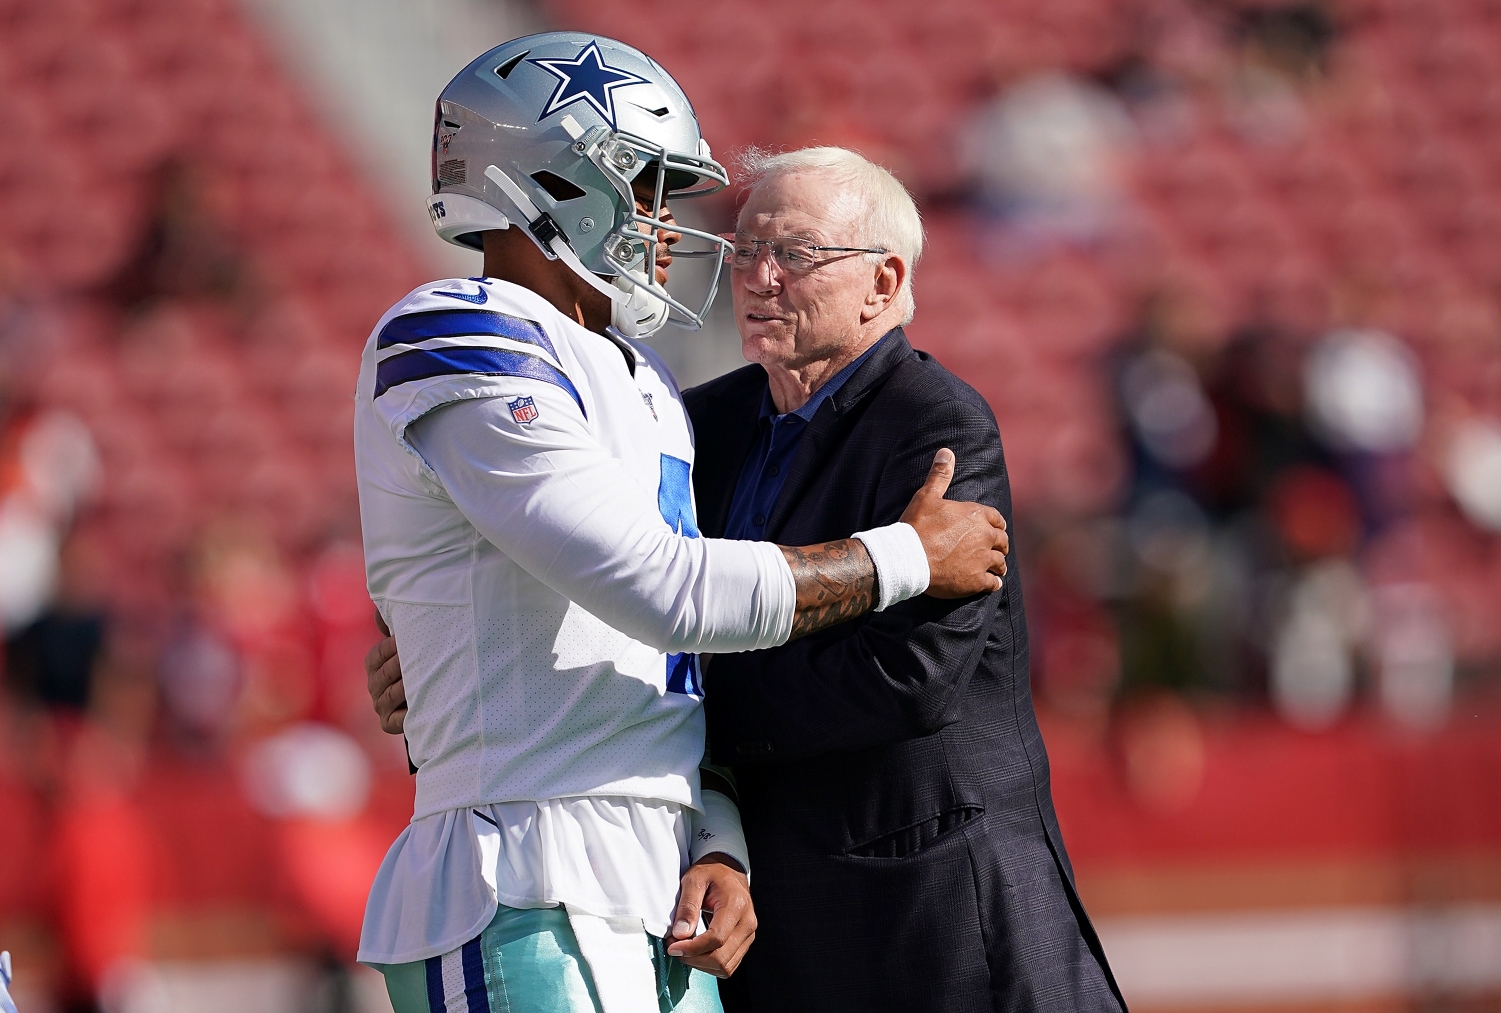 Quarterback Dak Prescott embraces Dallas Cowboys owner Jerry Jones before a game.